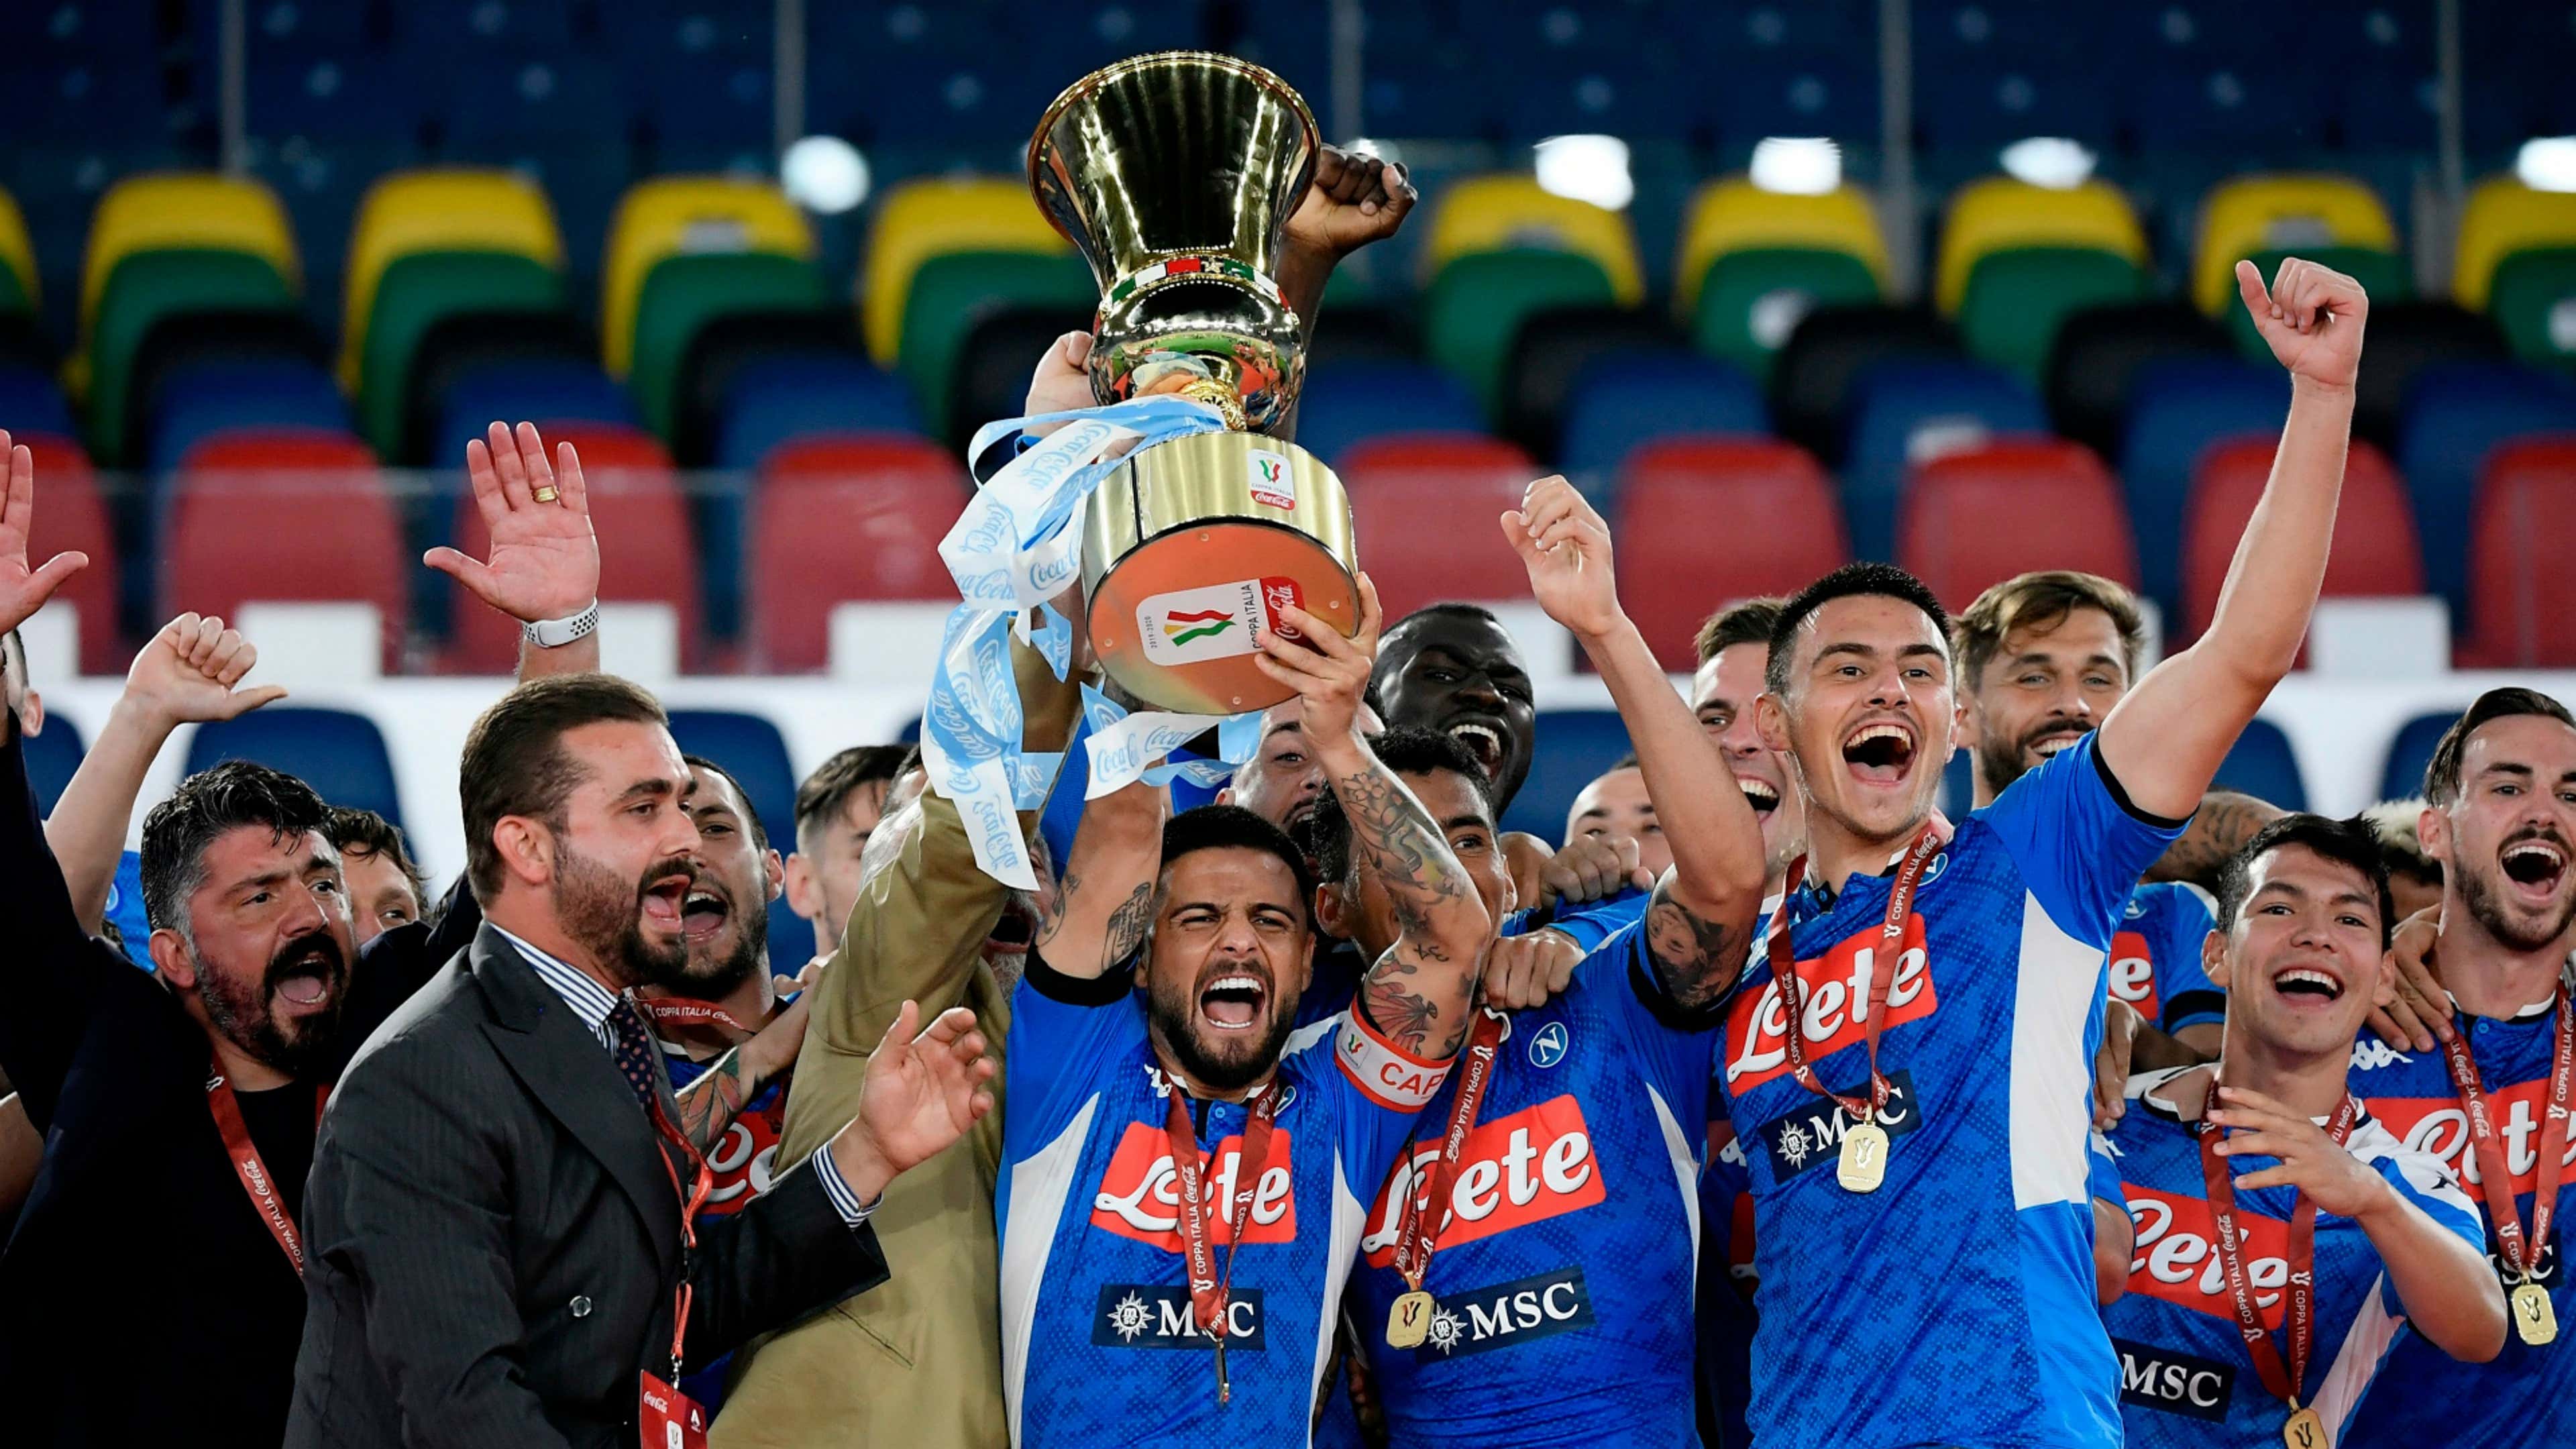 Napoli - Coppa Italia triumph